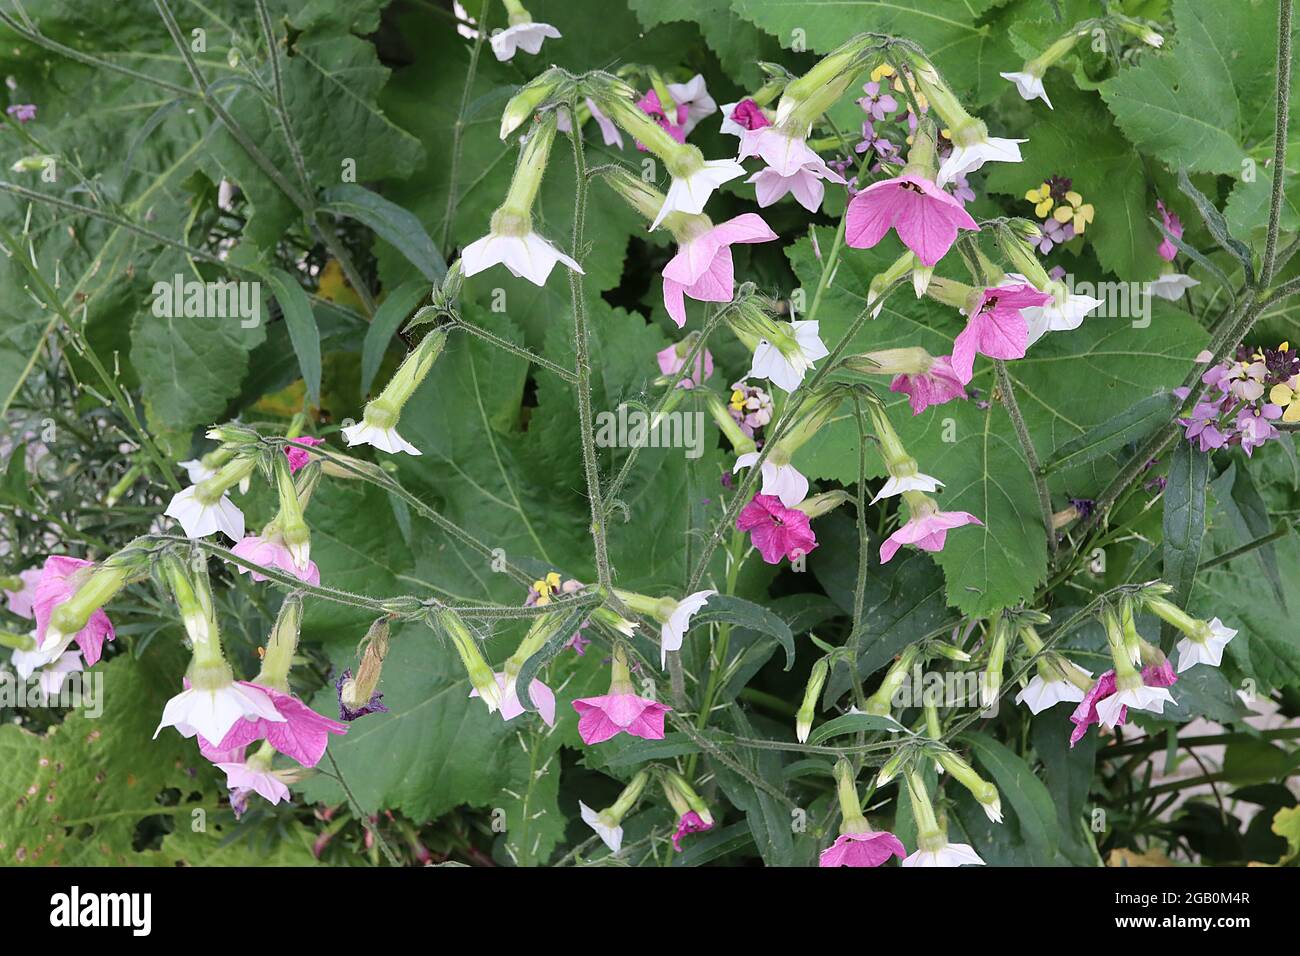 Nicotiana alata ‘Whisper Mixed’ Tobacco Plant Whisper Mixed - fiori tubolari bianchi, pallidi e rosa medi profumati, giugno, Inghilterra, Regno Unito Foto Stock